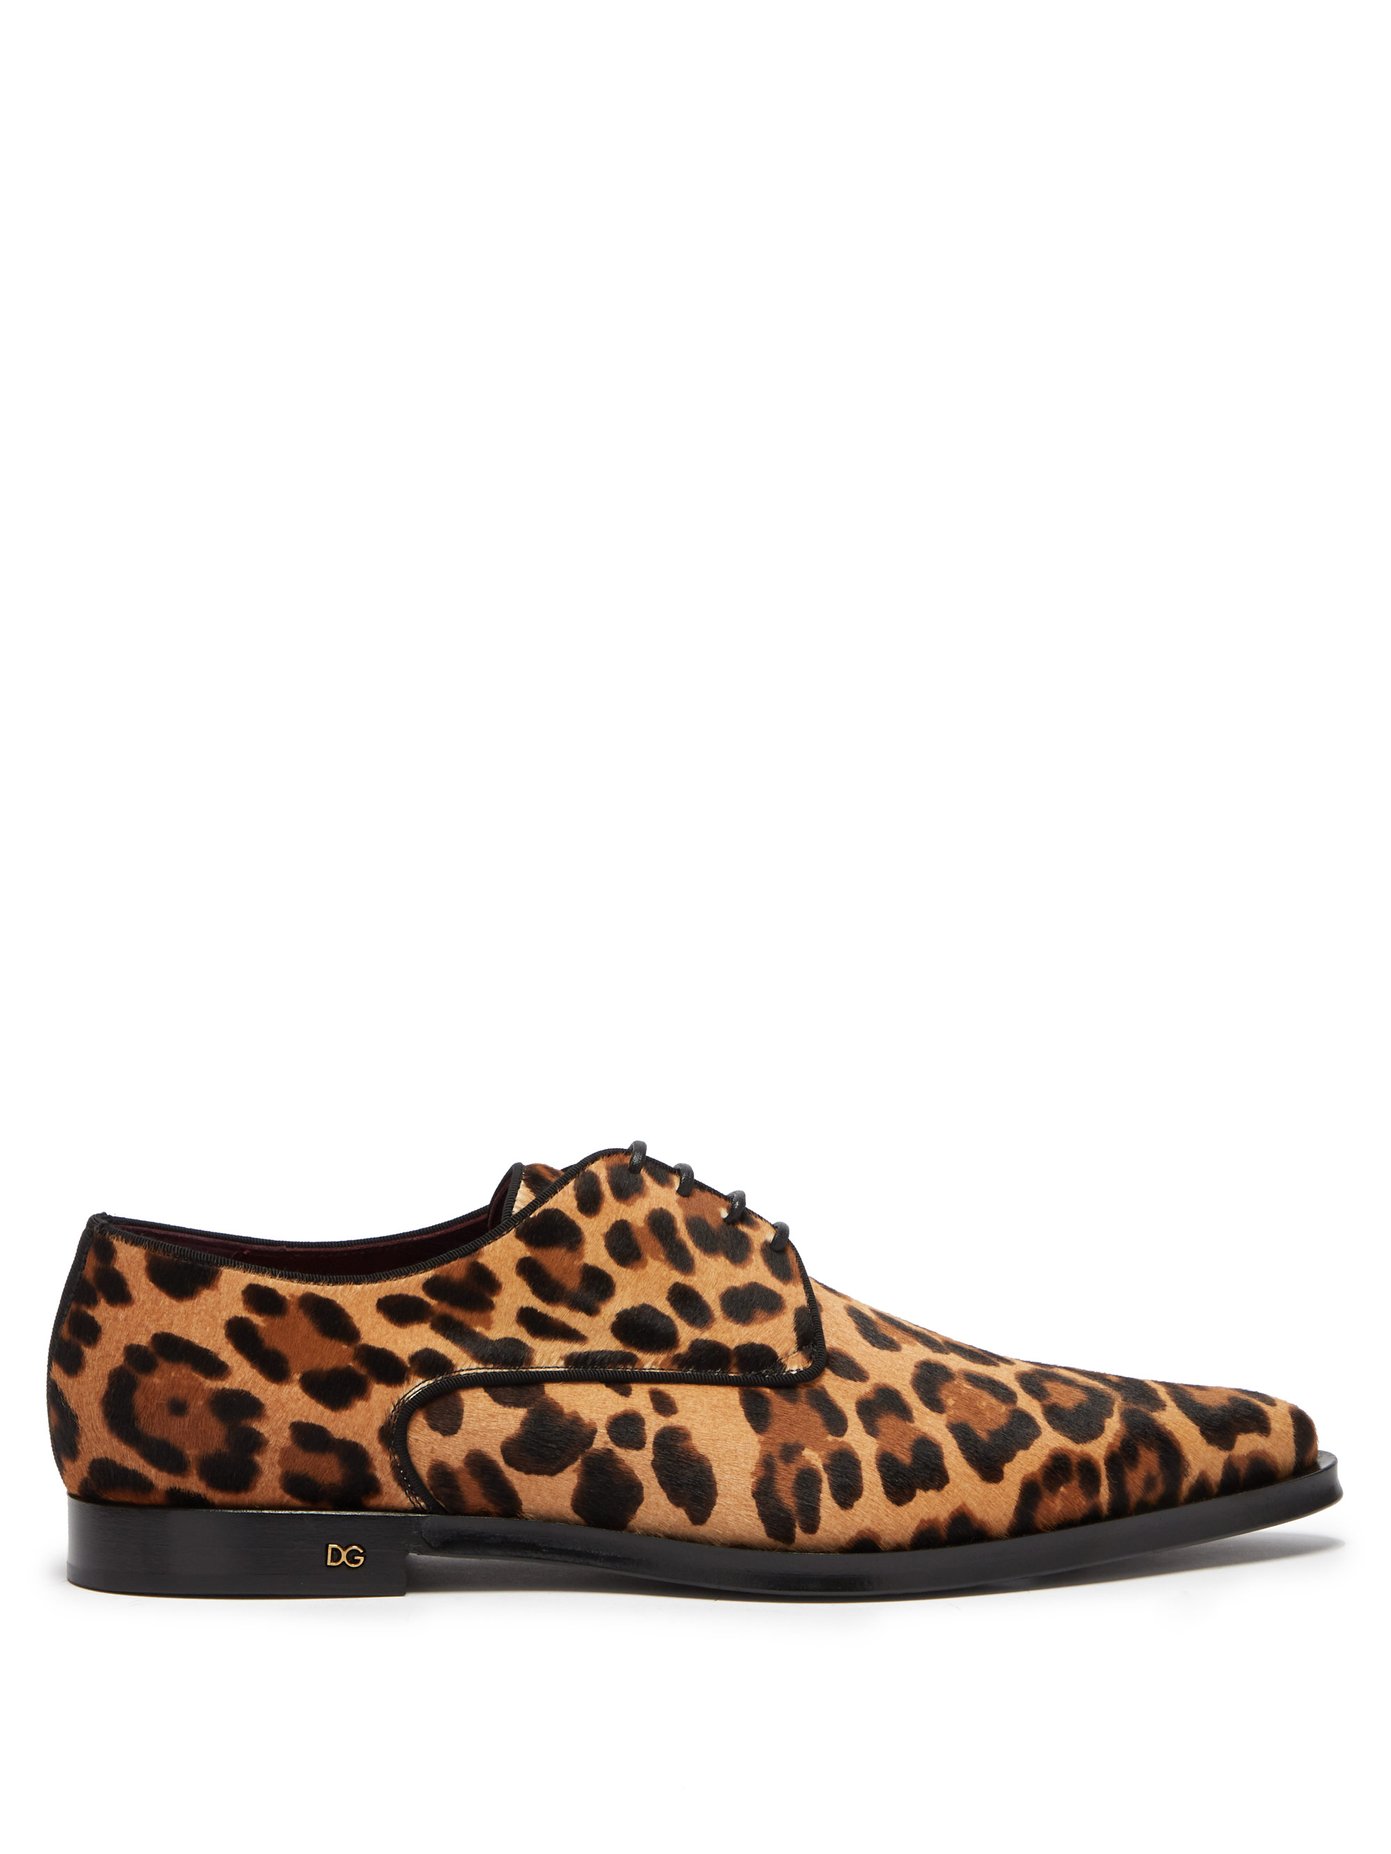 leopard print calf hair shoes